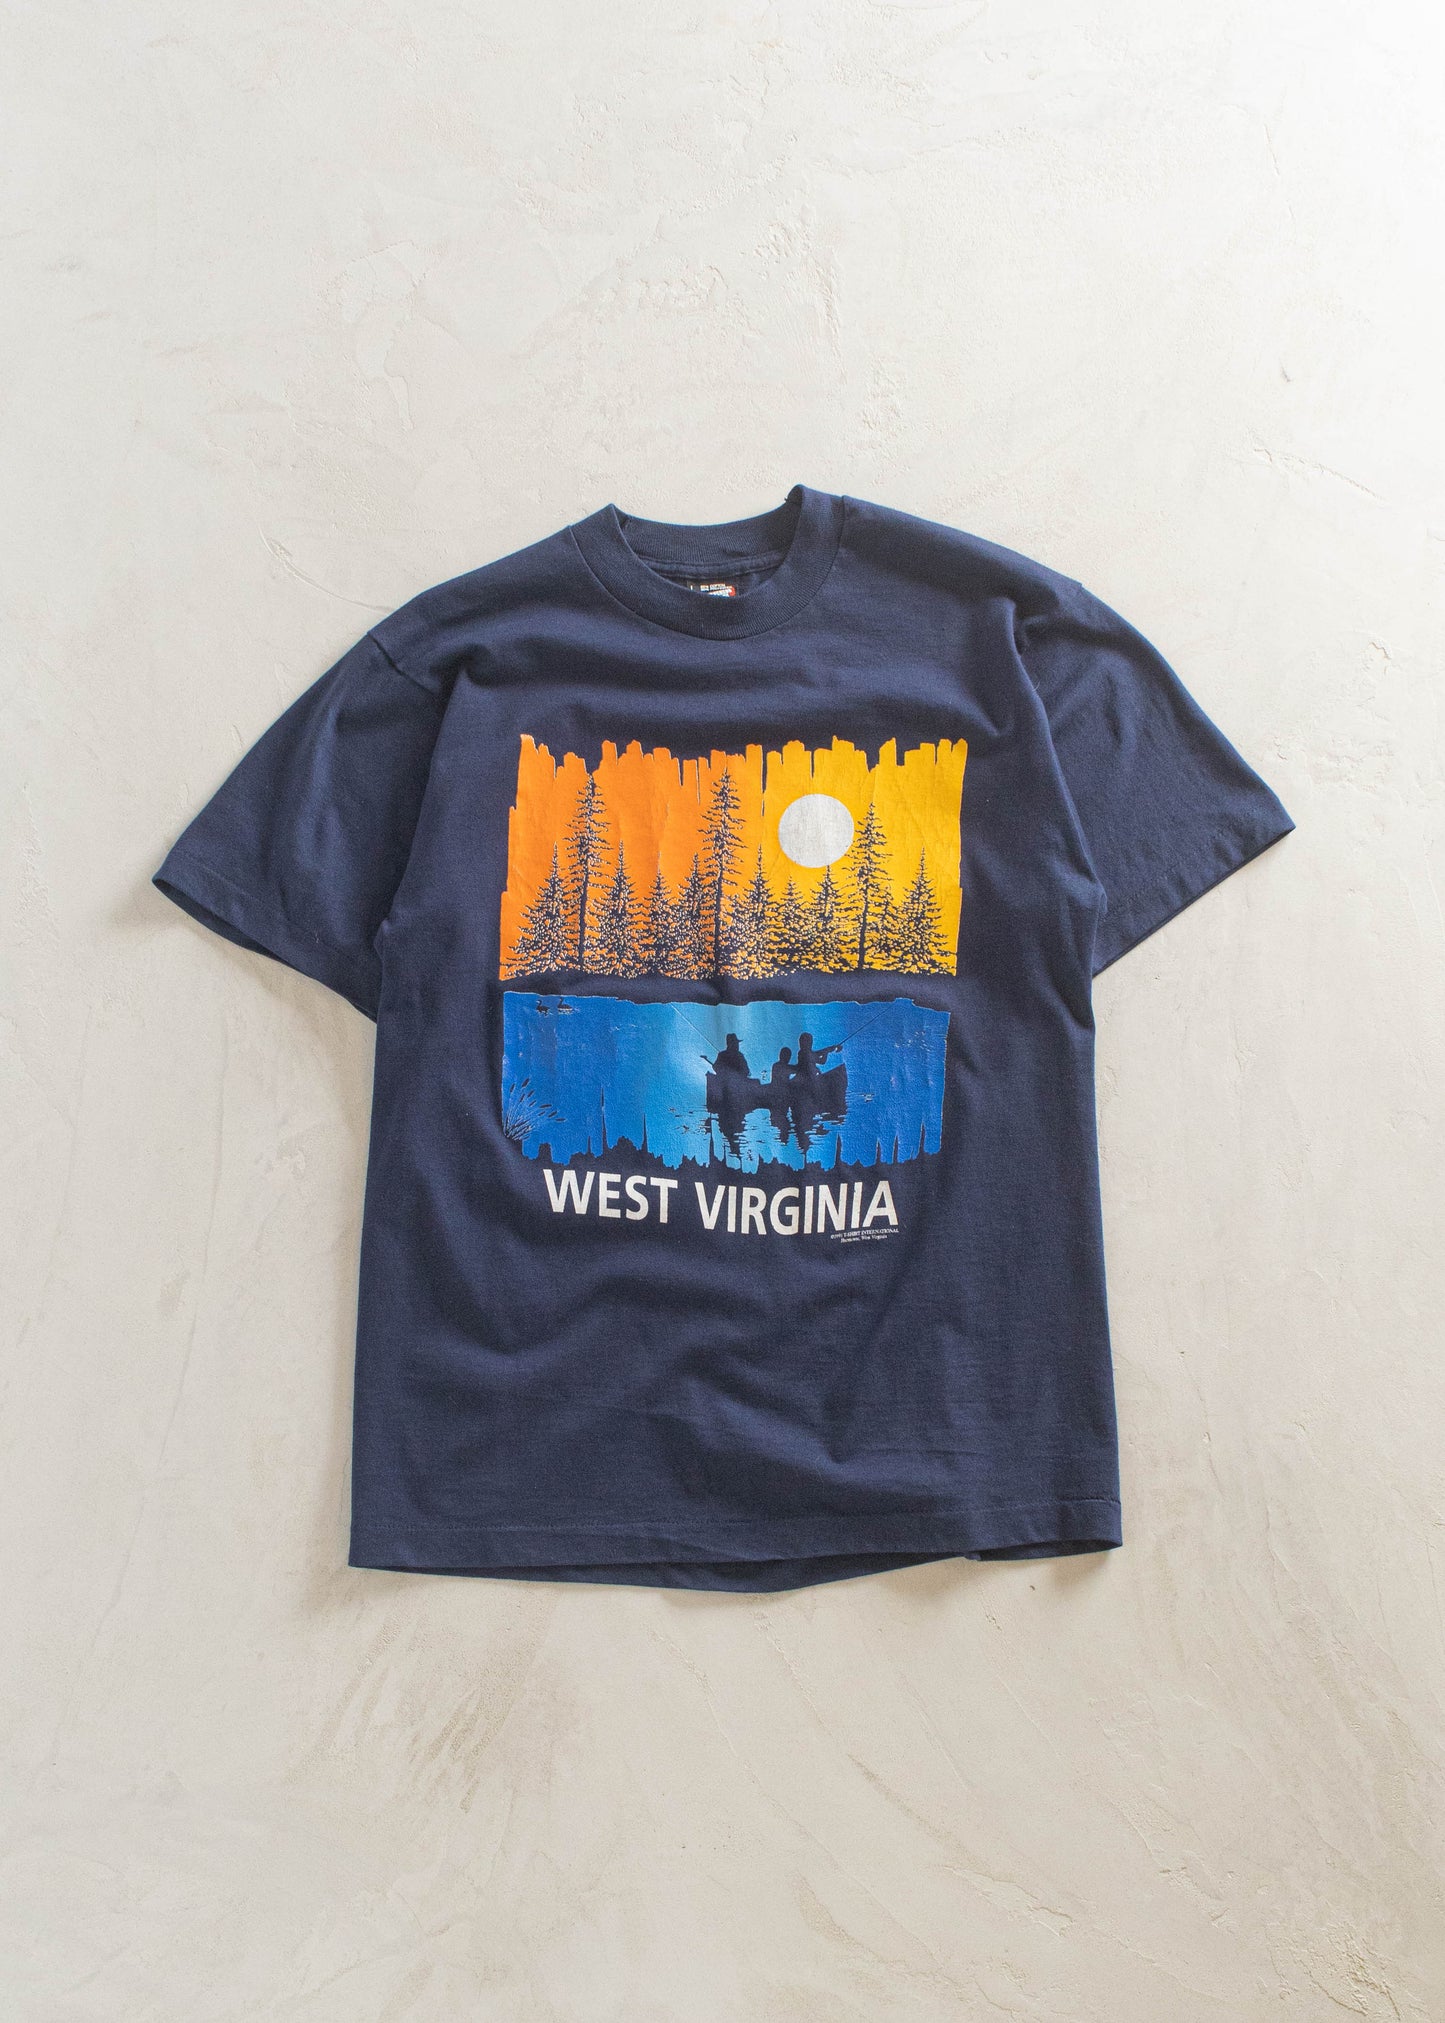 Vintage 1991 Screen Stars West Virginia Souvenir T-Shirt Size S/M